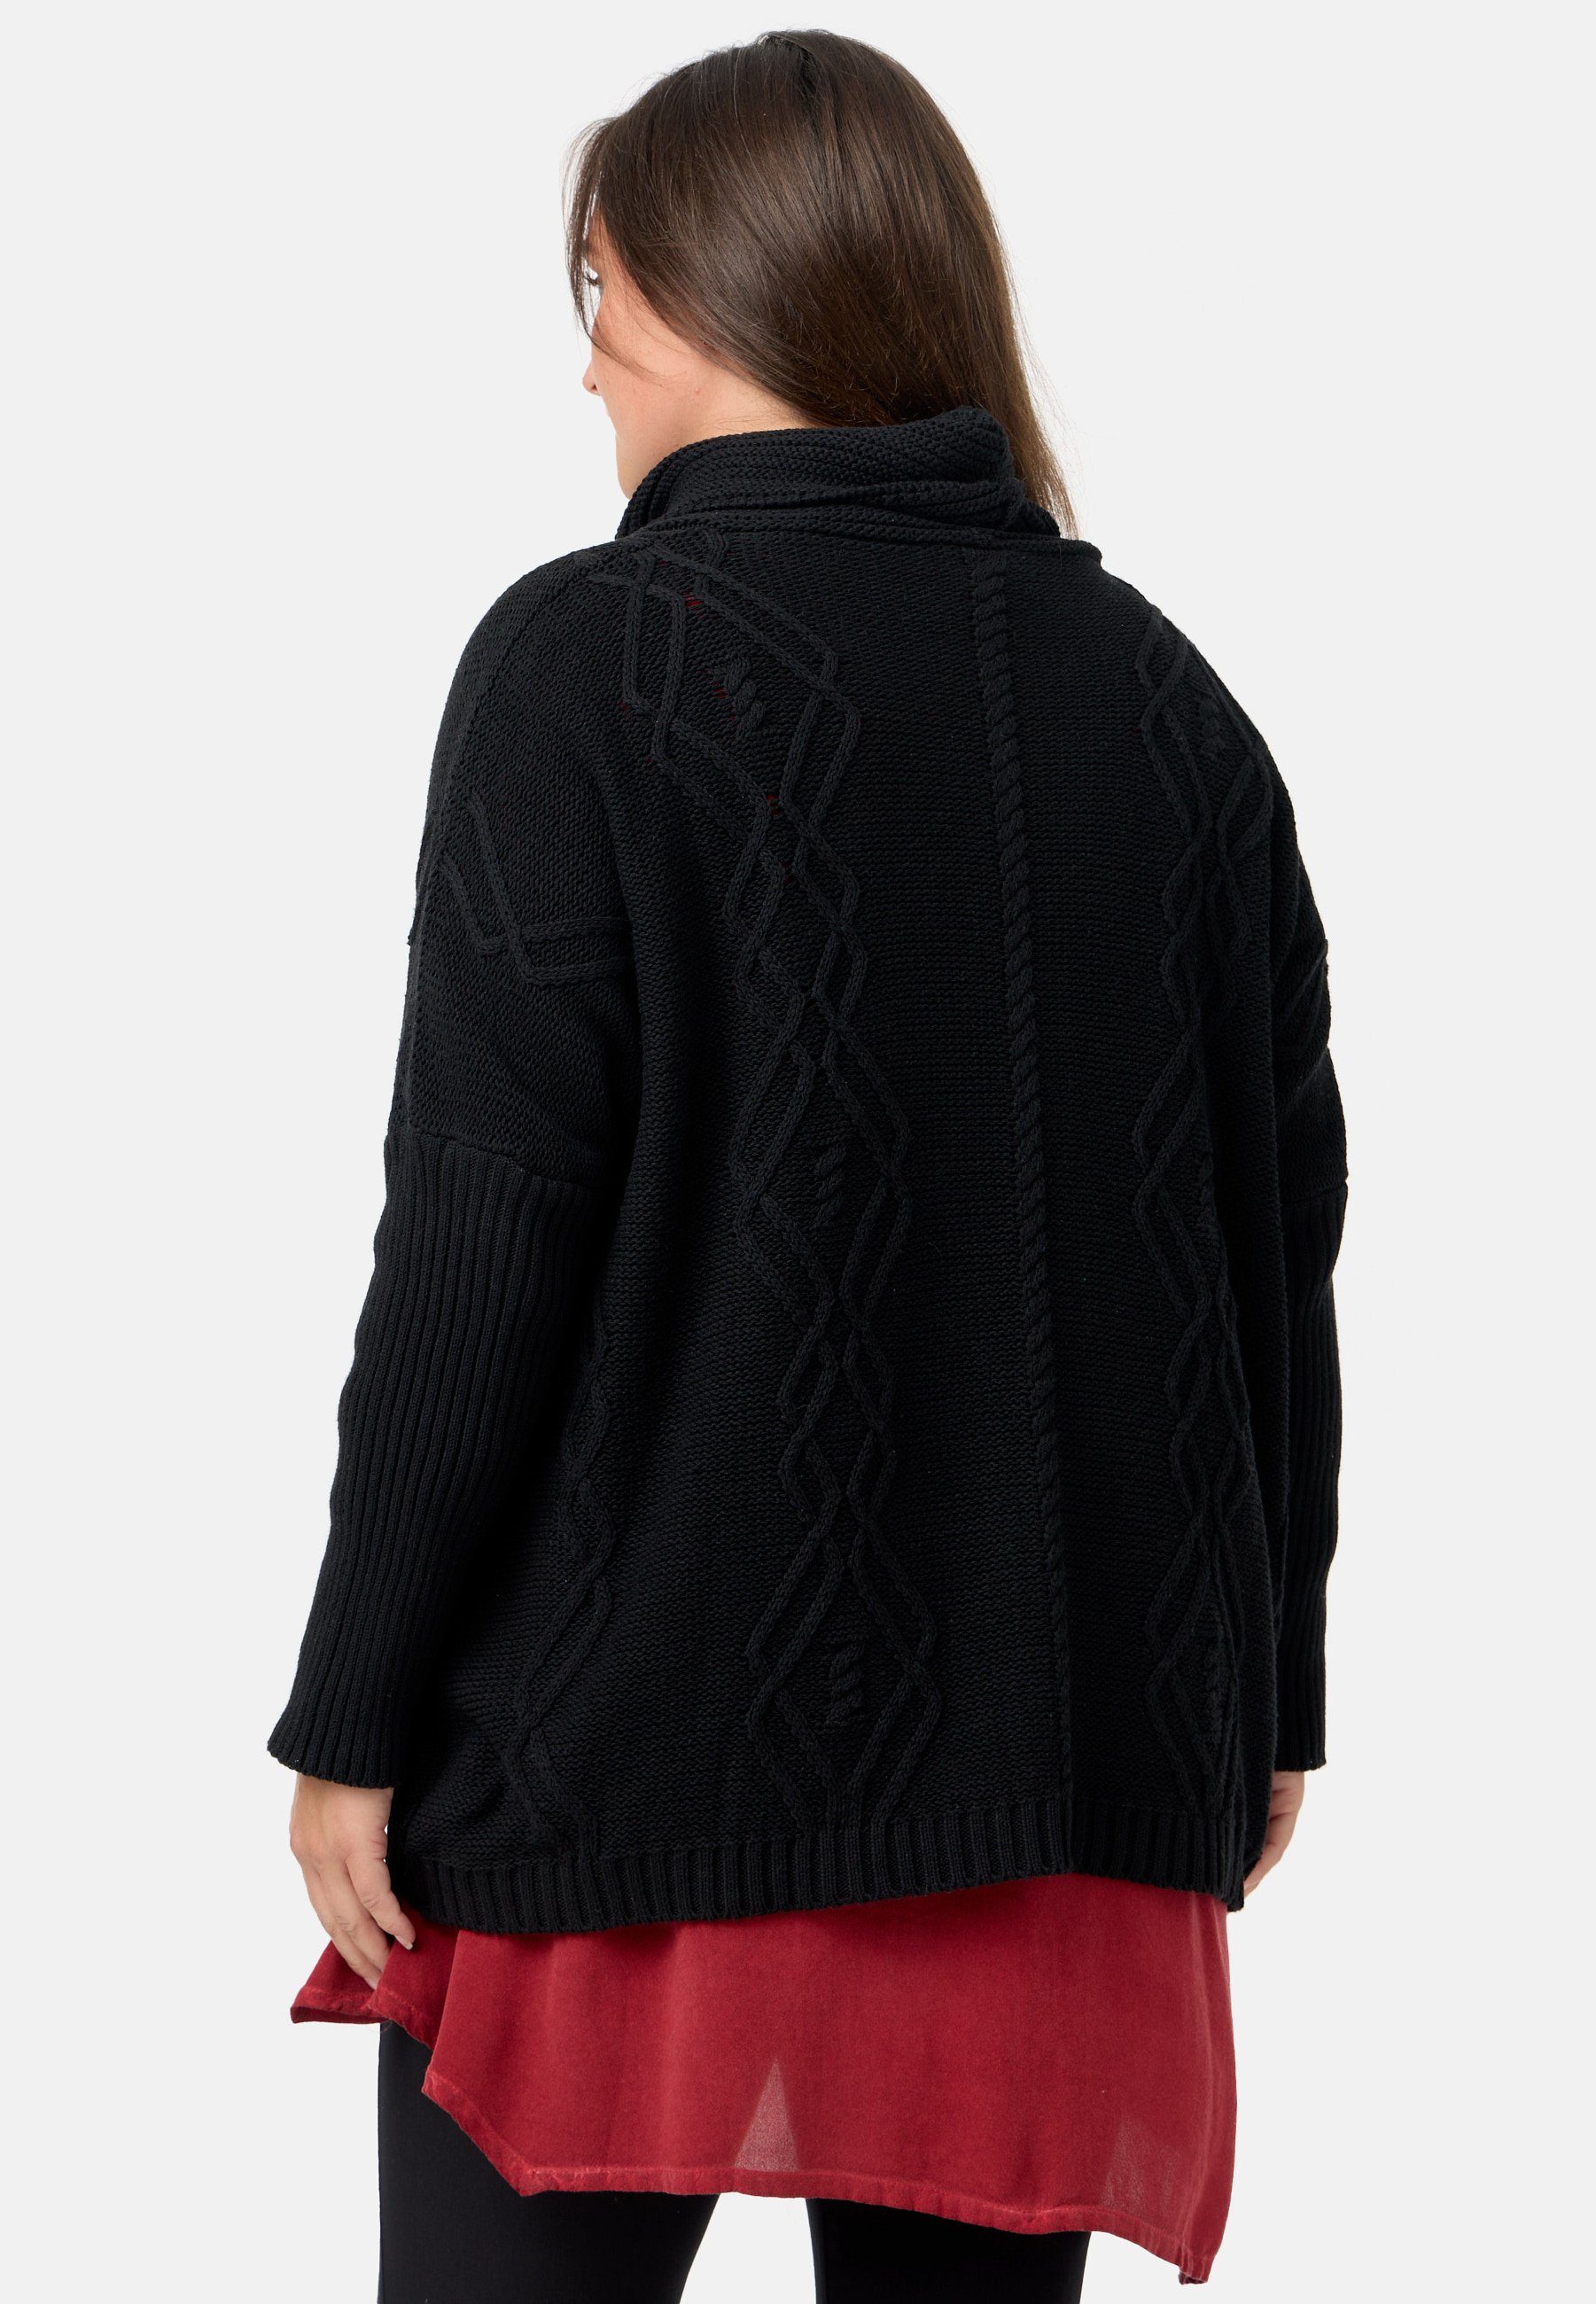 Kekoo mit 100% Schwarz Baumwolle 'Pure' aus Strick Strickpullover Schalkragen Poncho-Shirt